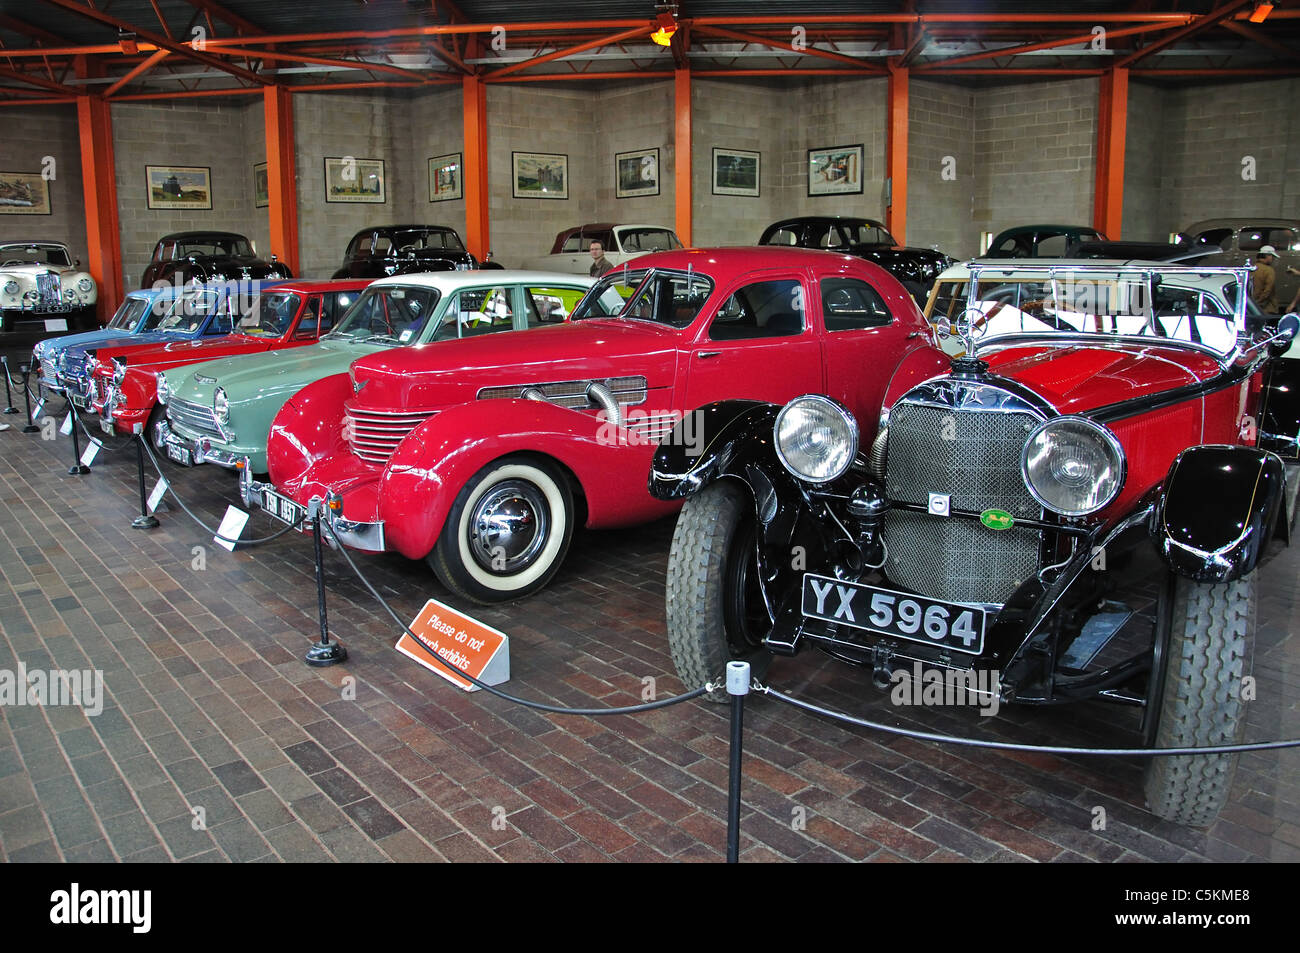 Voitures classiques à la National Motor Museum, Beaulieu, New Forest District, Hampshire, Angleterre, Royaume-Uni Banque D'Images